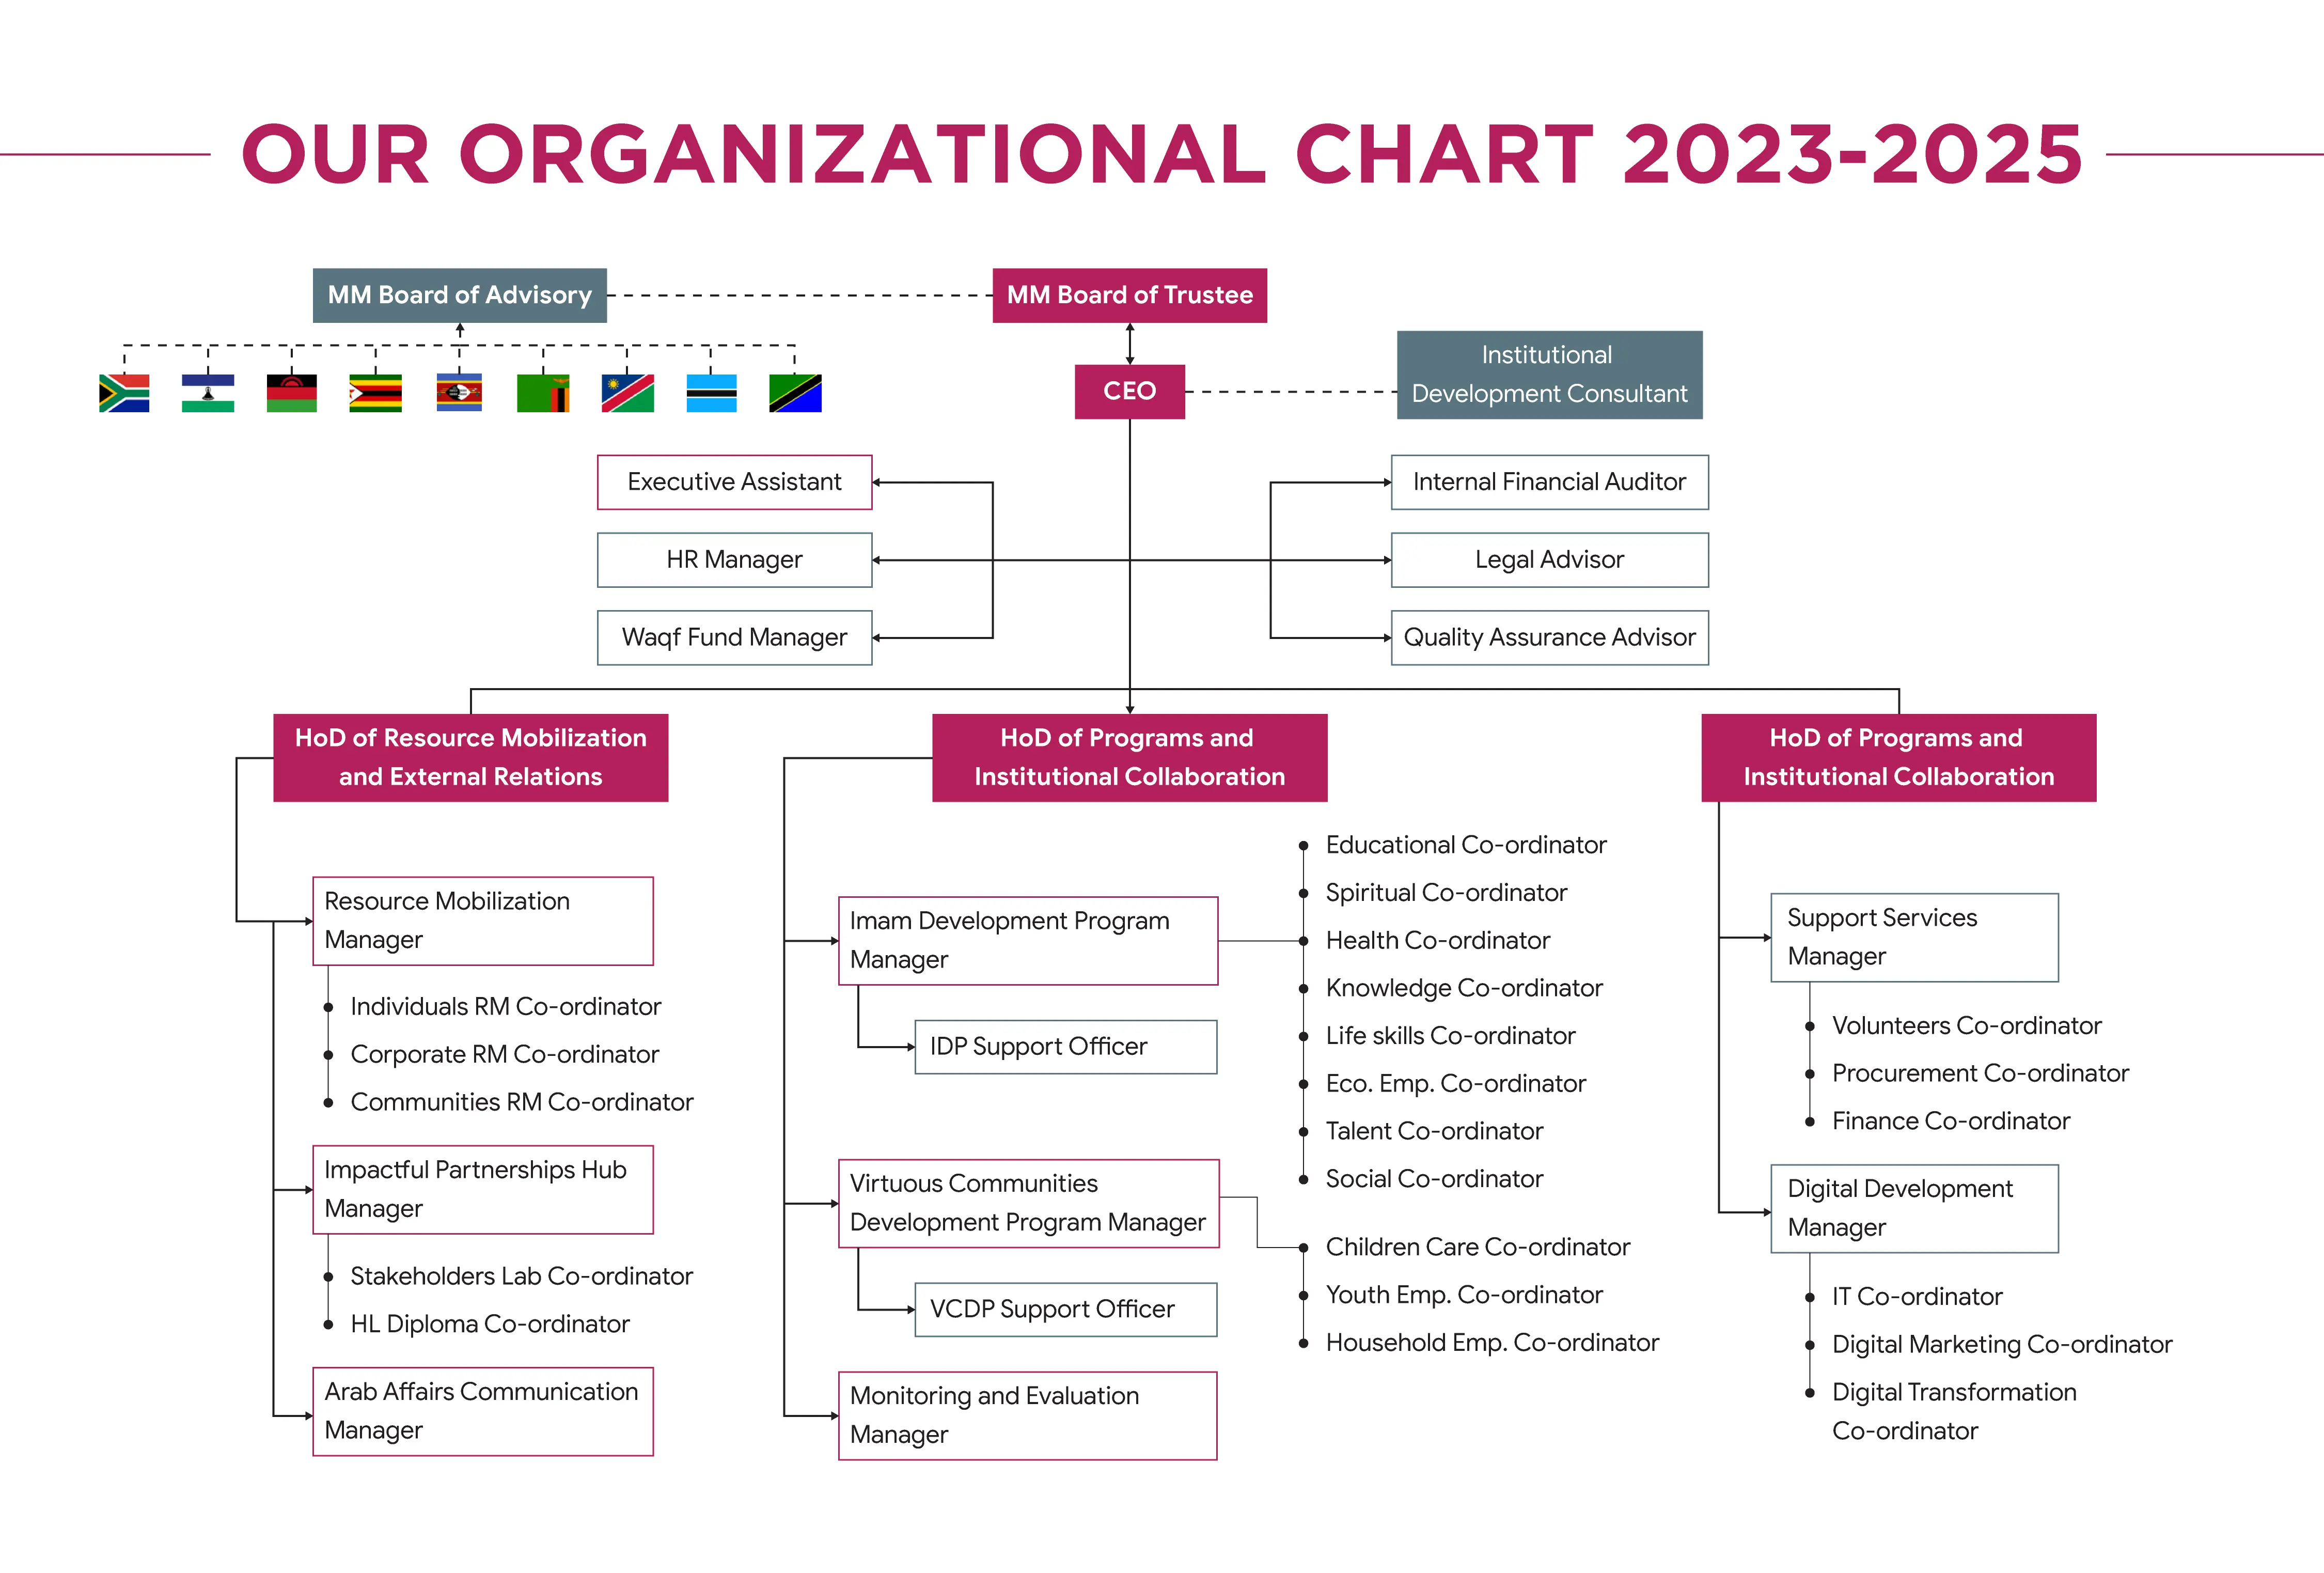 Organizational Chart 2023 - 2025